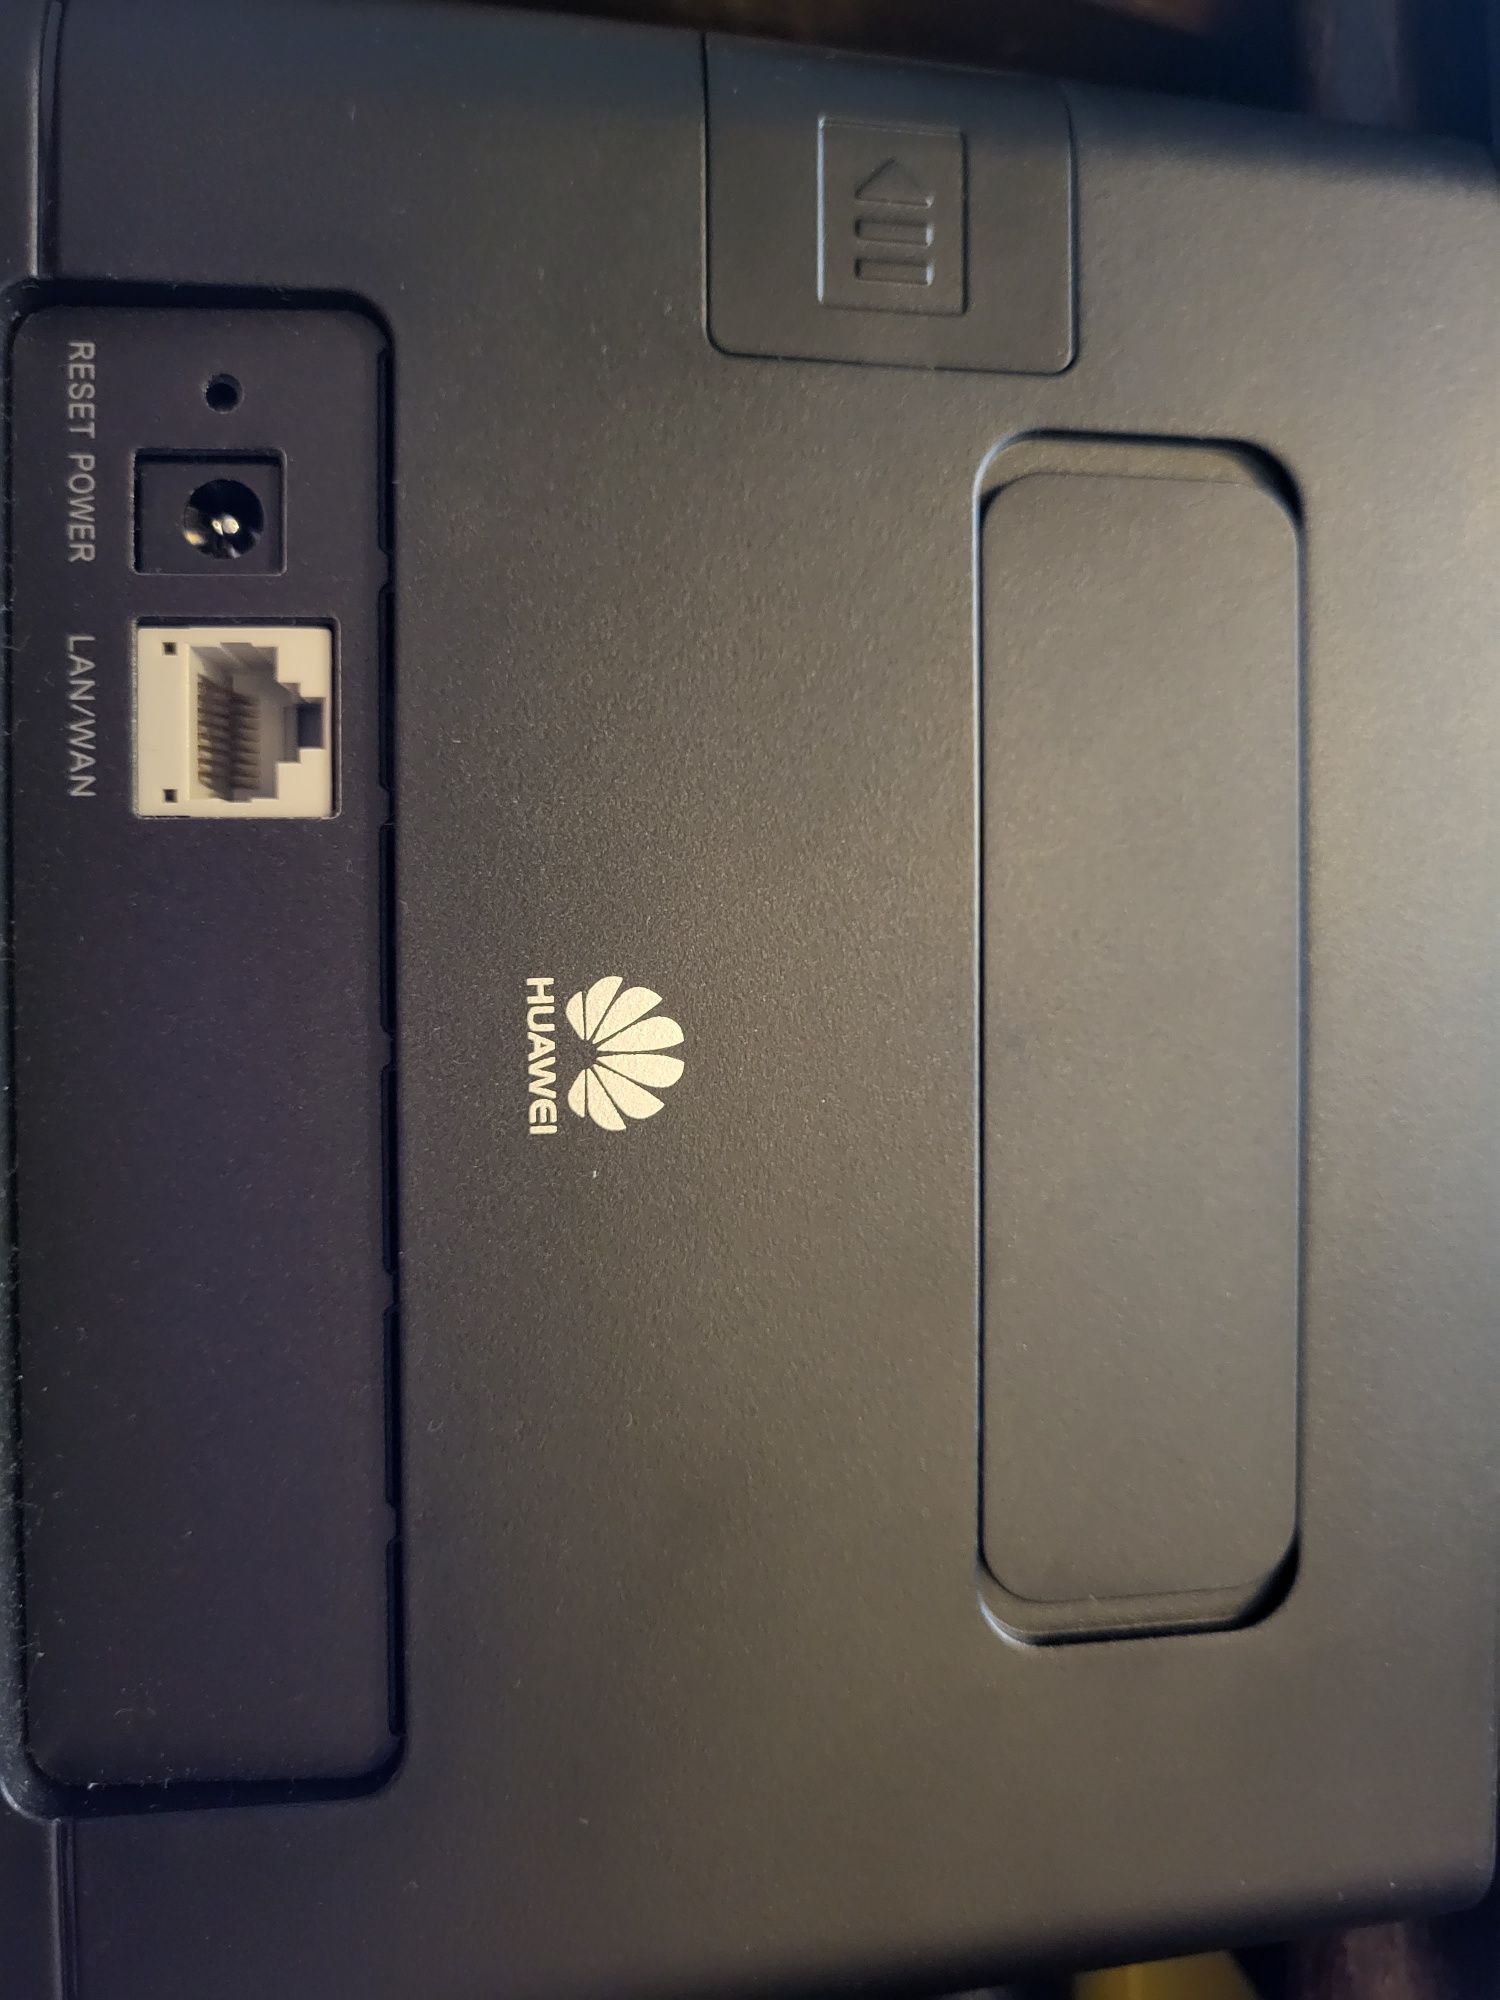 Huawei router B311-221